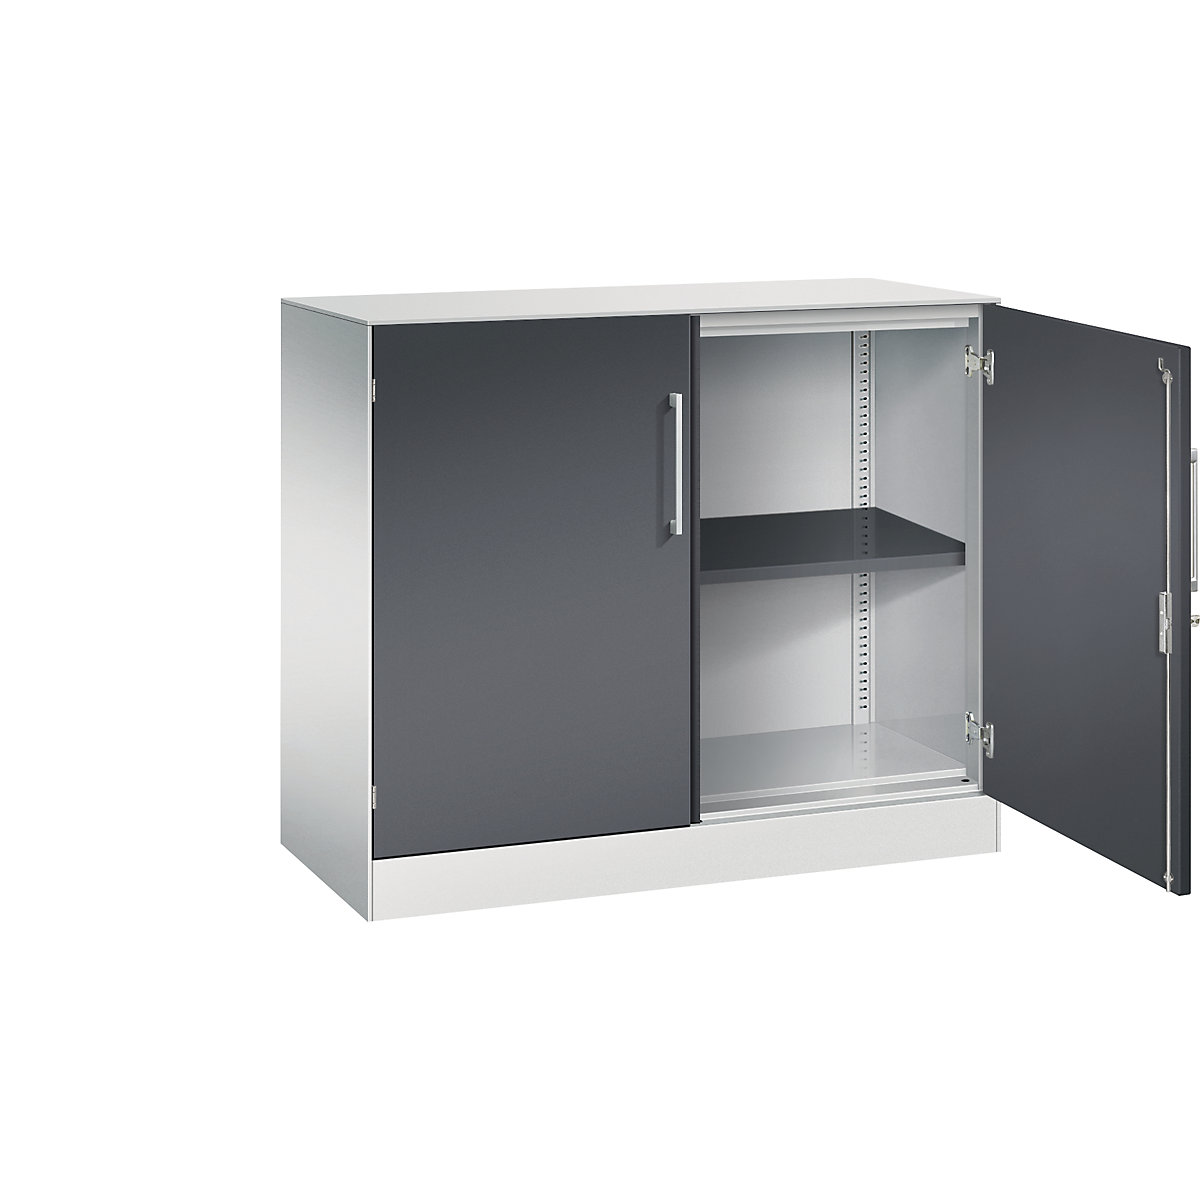 ASISTO double door cupboard, height 897 mm – C+P, width 1000 mm, 1 shelf, light grey/black grey-11